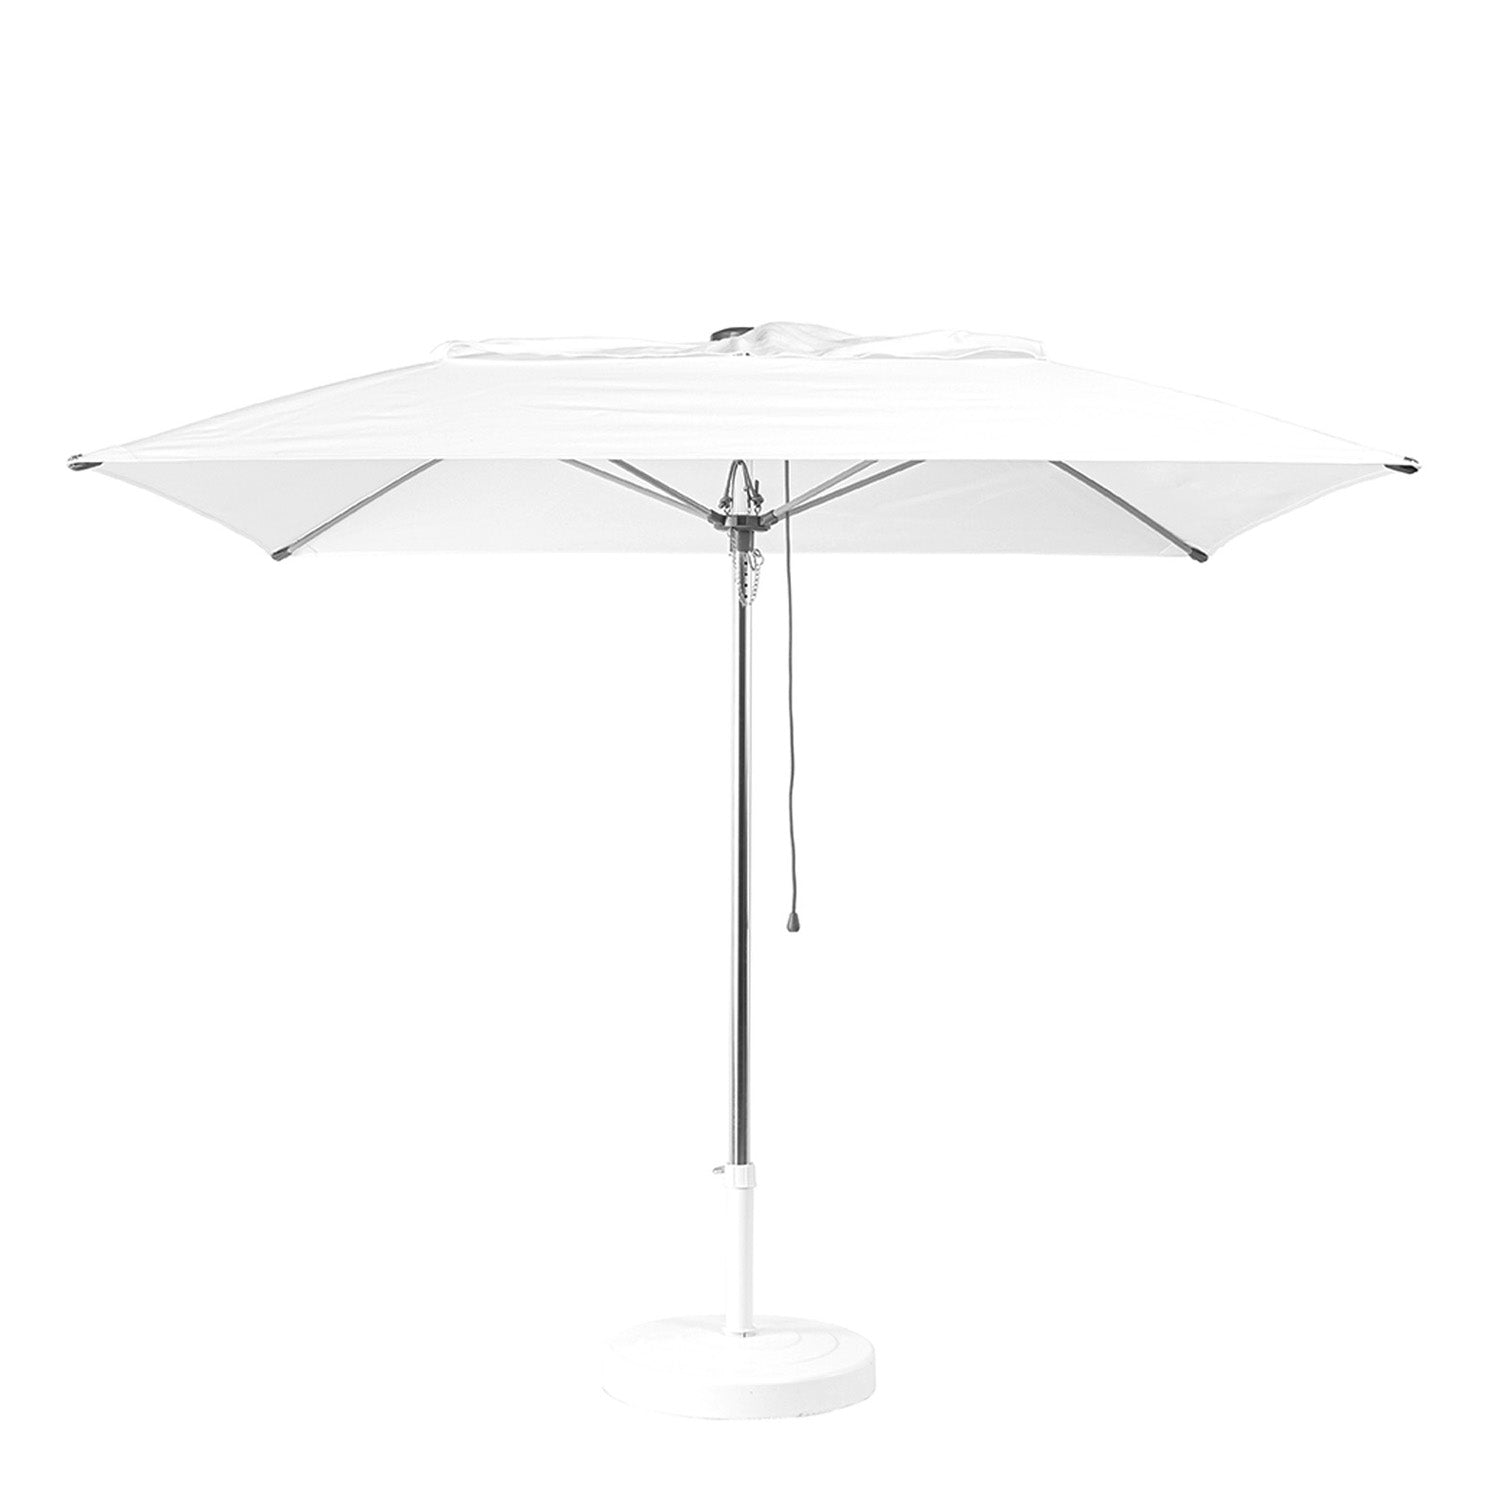 Windmaster square umbrella 200 x 200 cm